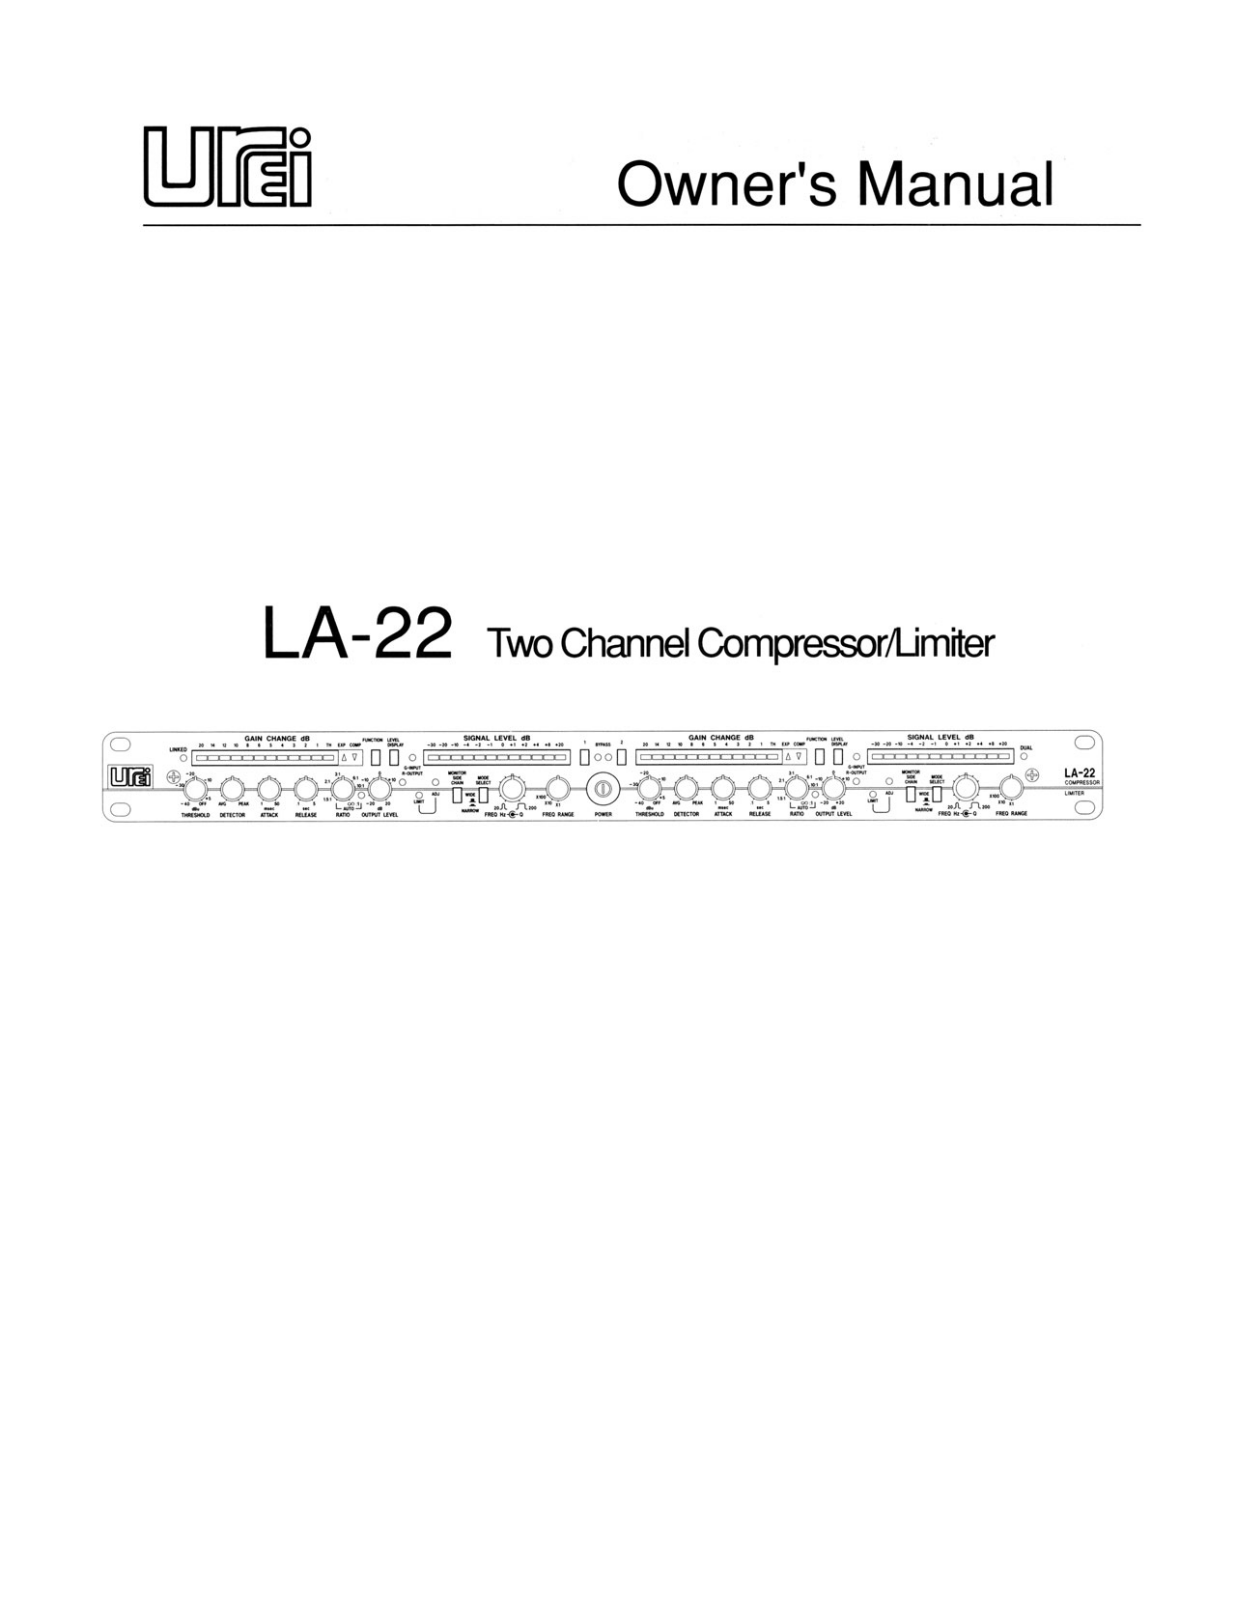 Urei LA-22 User Manual